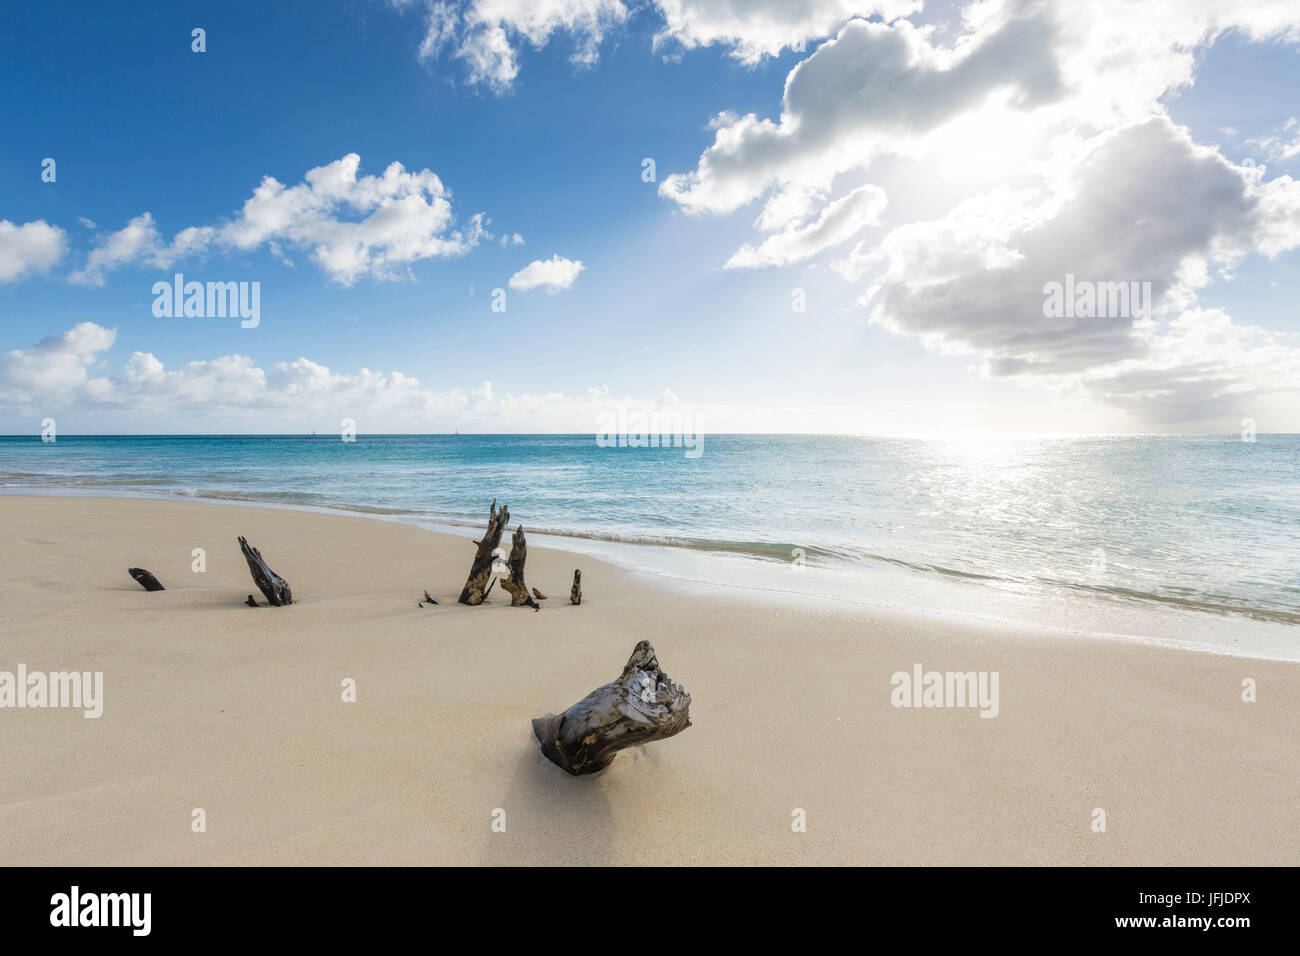 Los troncos de los árboles en la playa enmarcada por el cristalino Mar Caribe Ffryers Playa Islas de Sotavento de Antigua y Barbuda Antillas Foto de stock